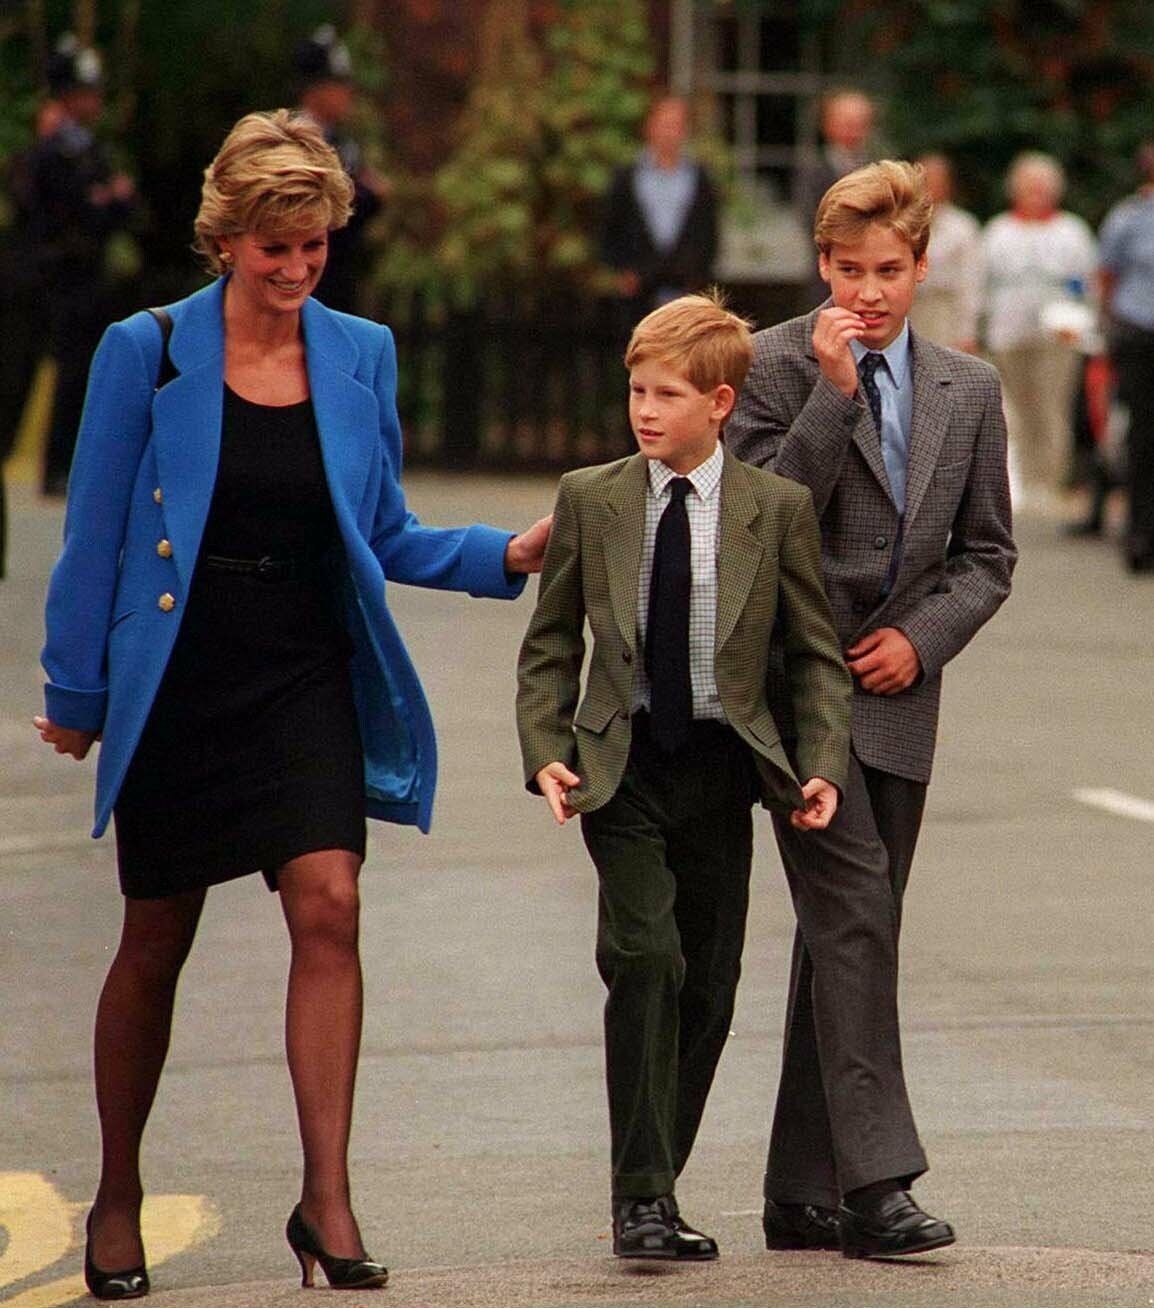 Le prince William arrive avec sa mère, Diana, princesse de Galles, et son frère, le prince Harry, pour sa première journée au collège Eton, le 6 septembre 1995 à Windsor, en Angleterre. | Source : Getty Images